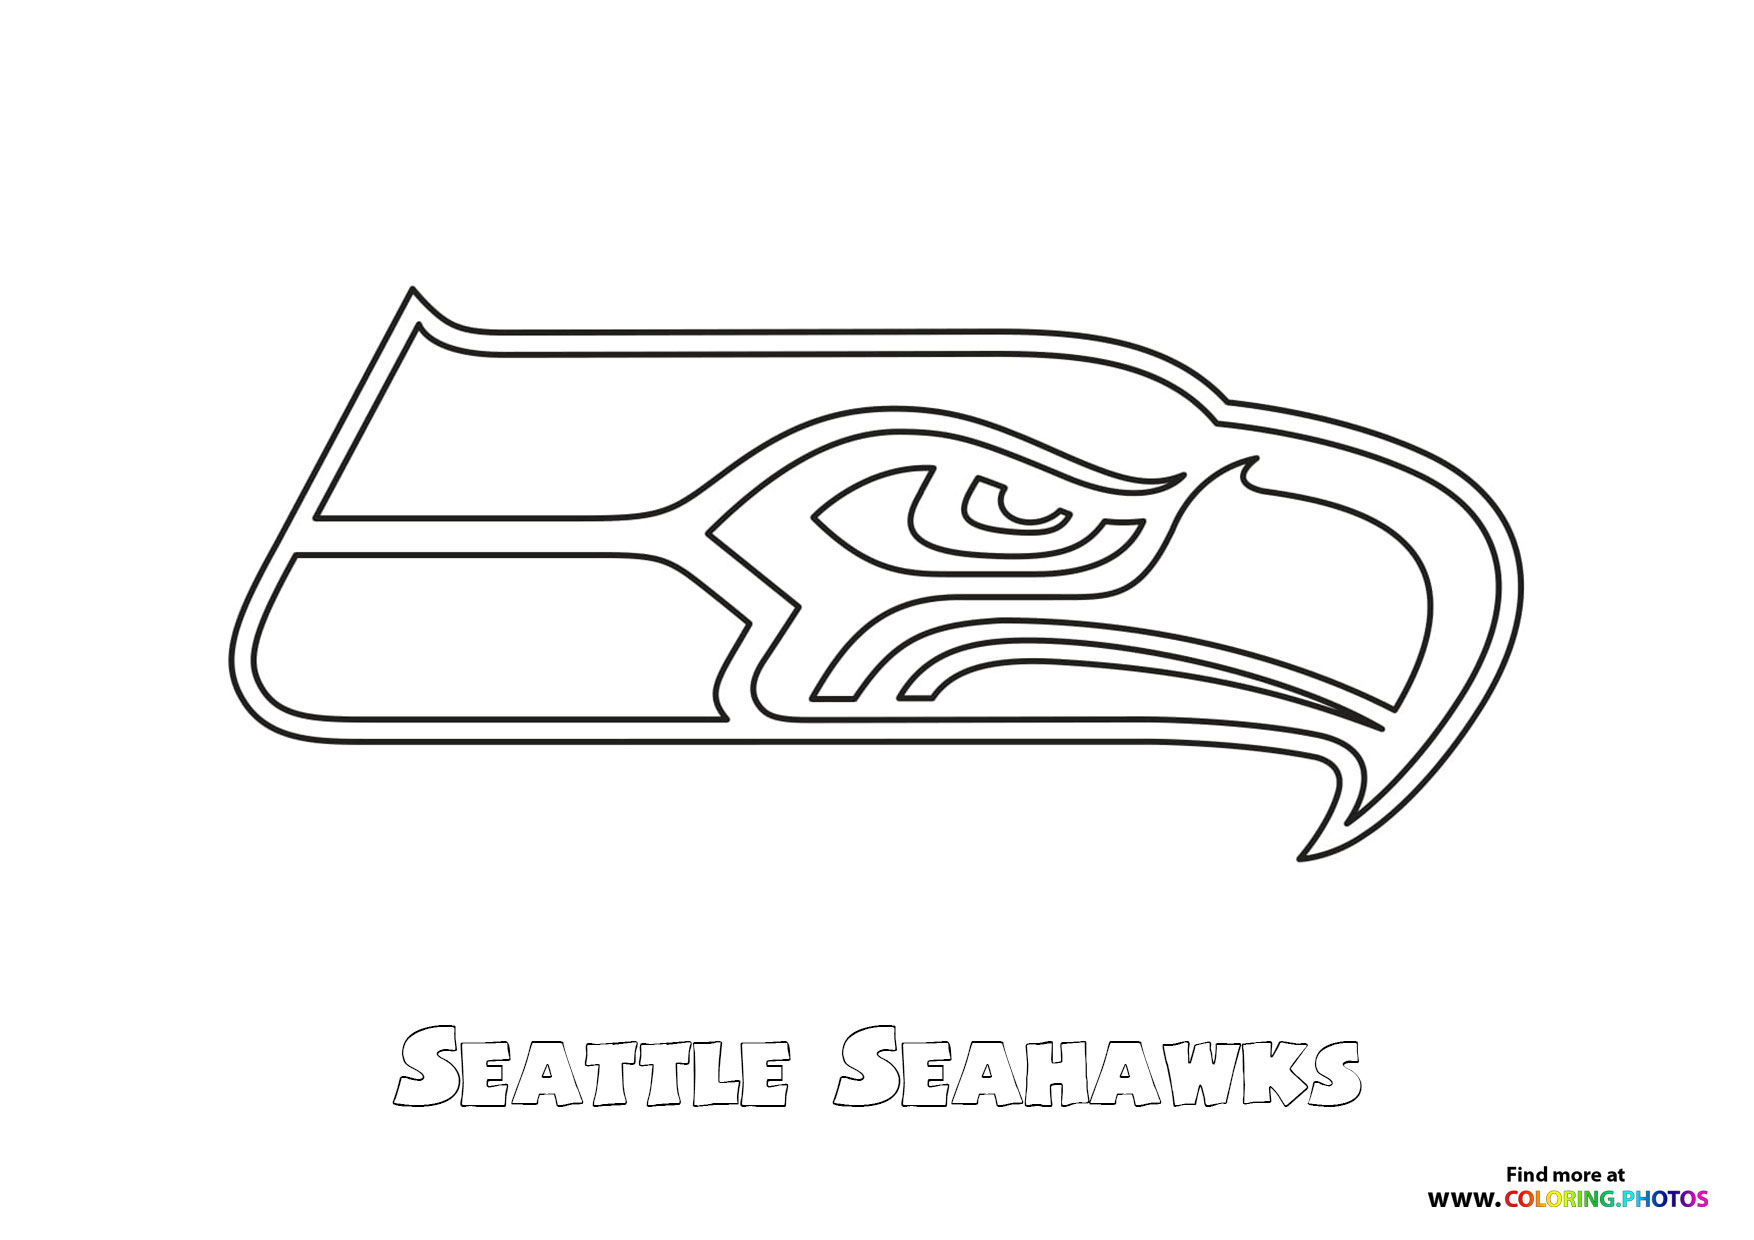 Seattle seahawks nfl logo